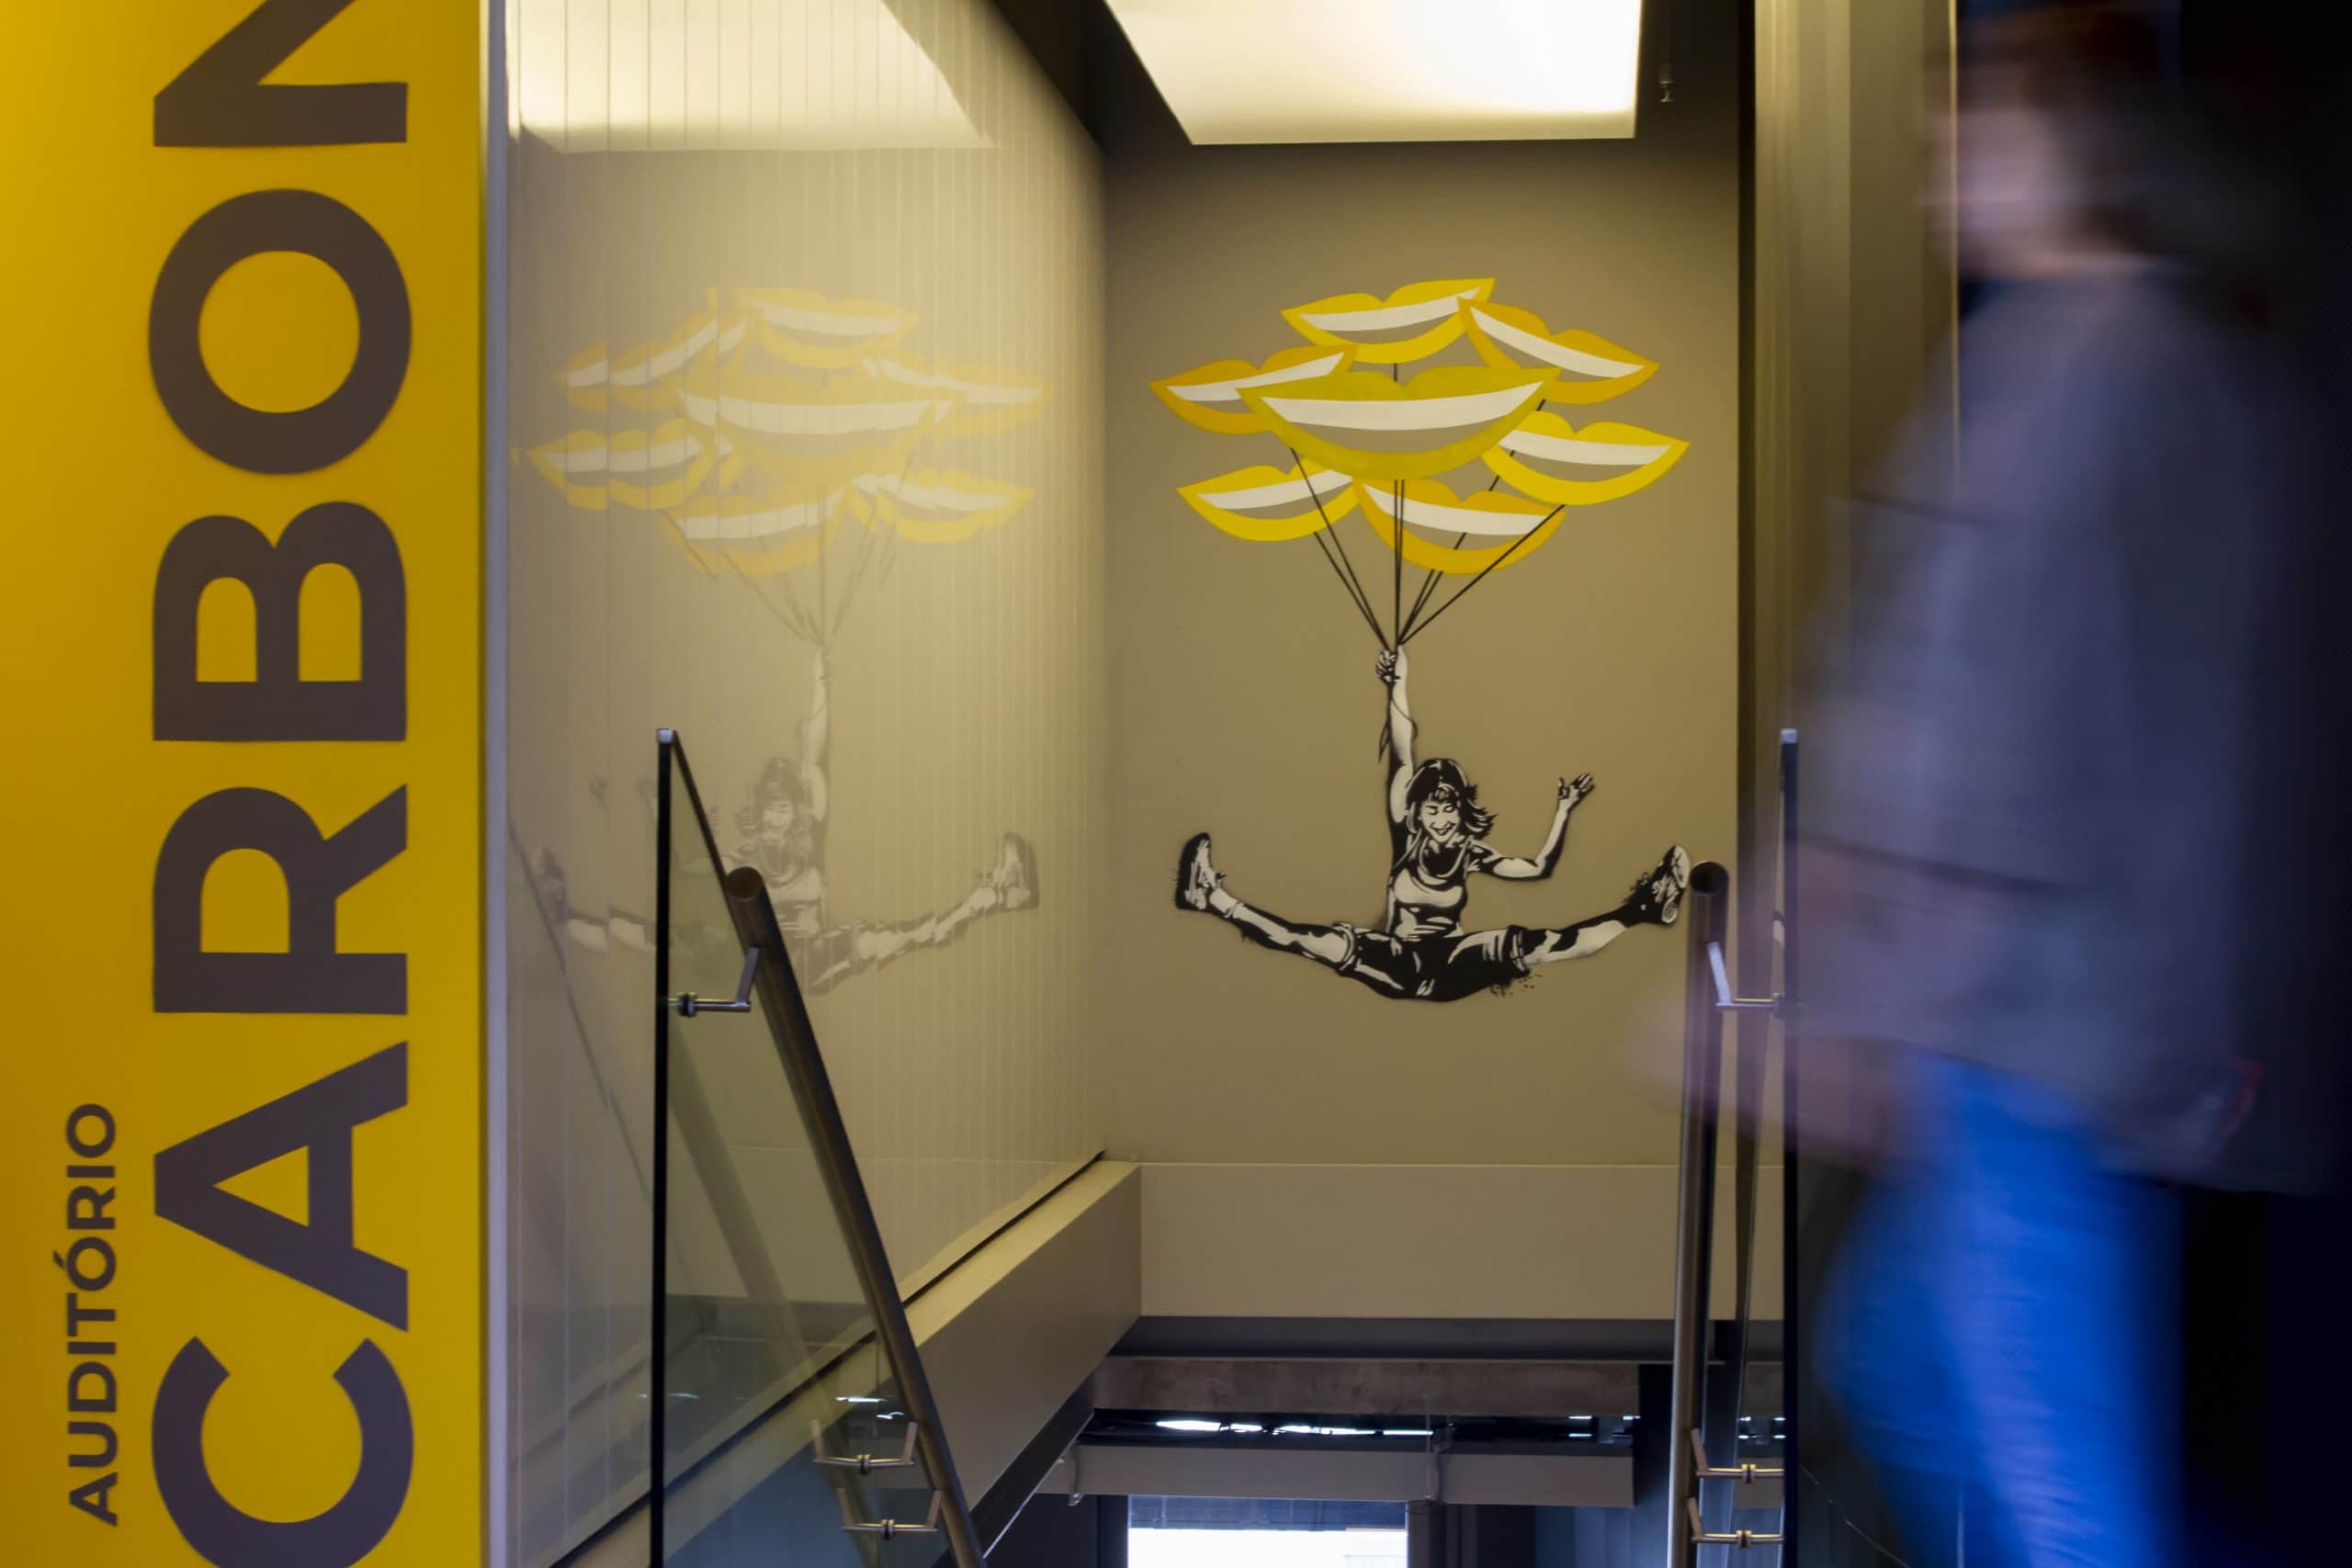 Foto de um grafismo na parede do prédio do C6 Bank de uma garota sorrindo e voando ao segurar balões em formato de sorriso na cor amarela